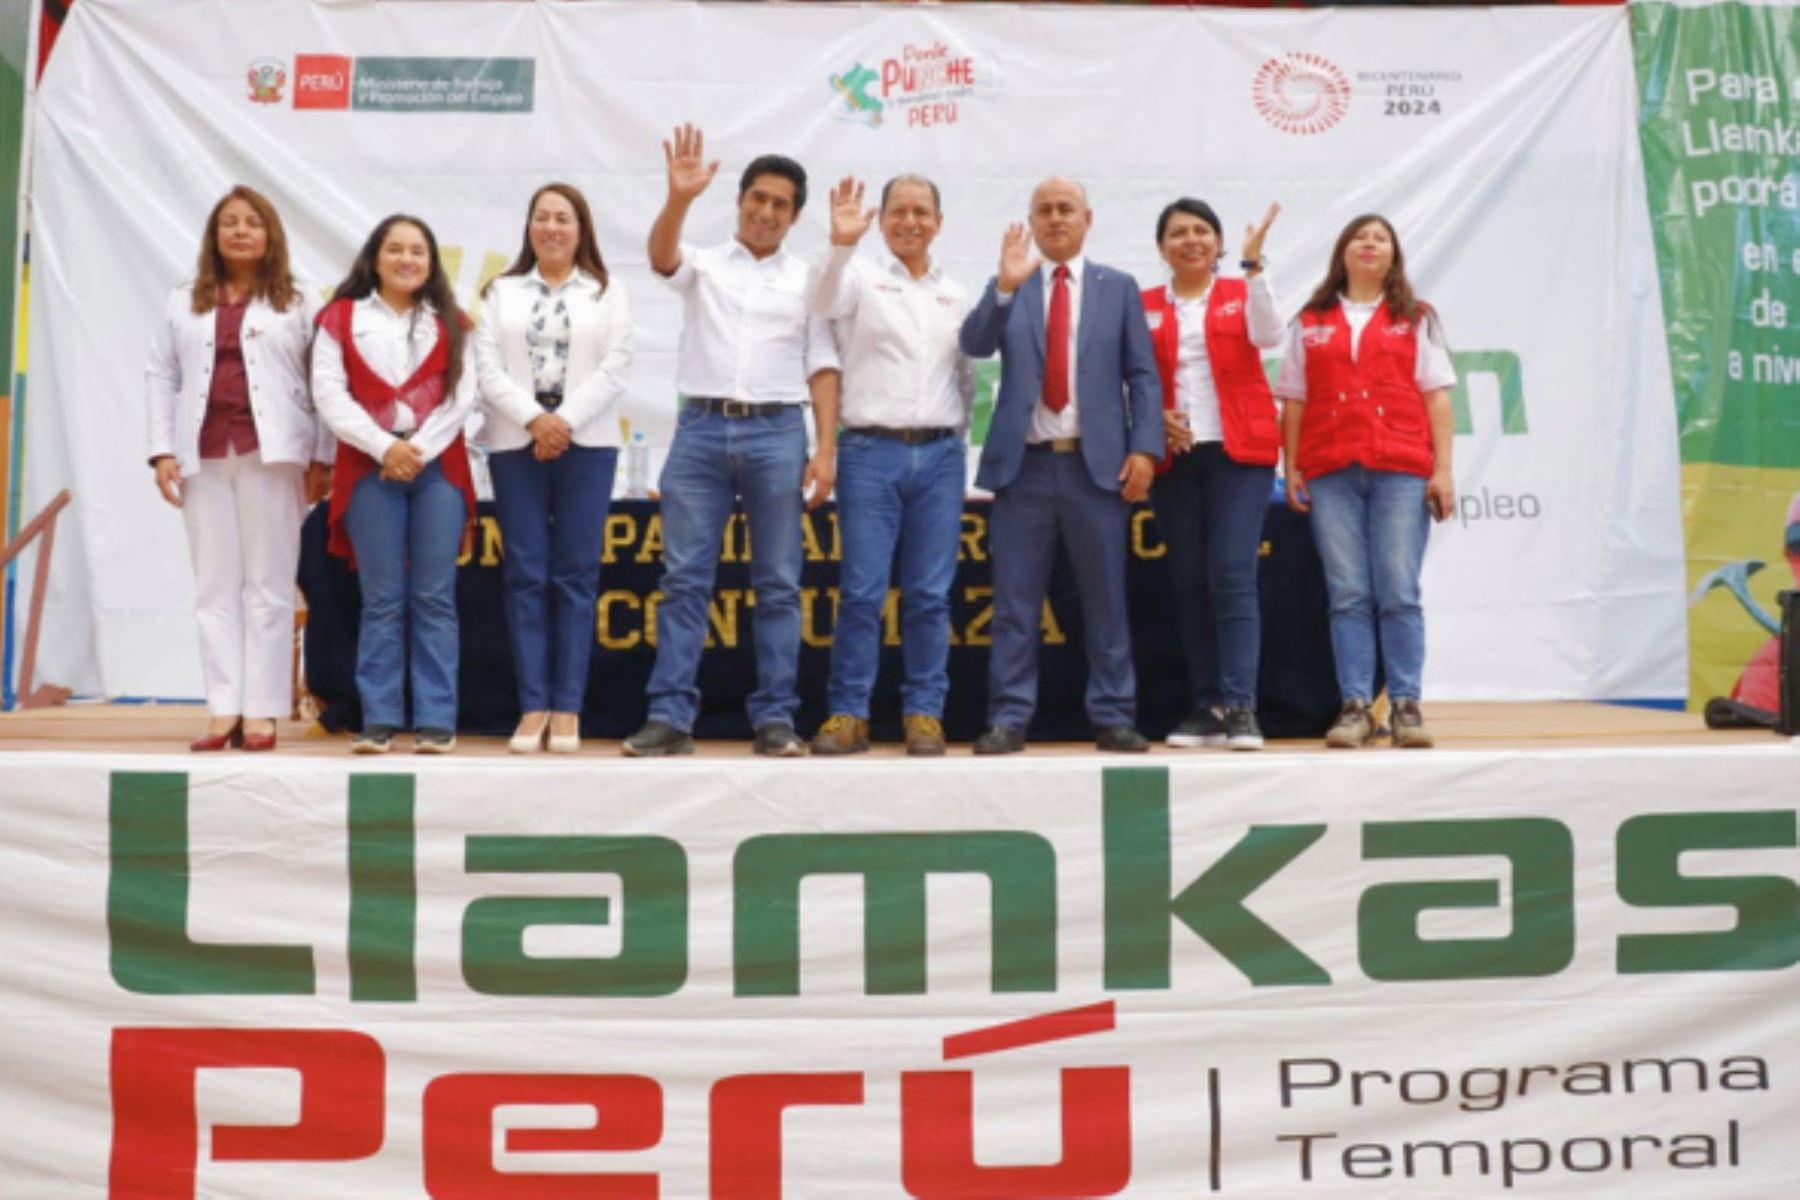 El ministro de Trabajo, Daniel Maurate Romero, resaltó que Llamkasun Perú es un programa inclusivo que prioriza la participación de "mujeres, adultos mayores y personas con discapacidad". ANDINA/Difusión